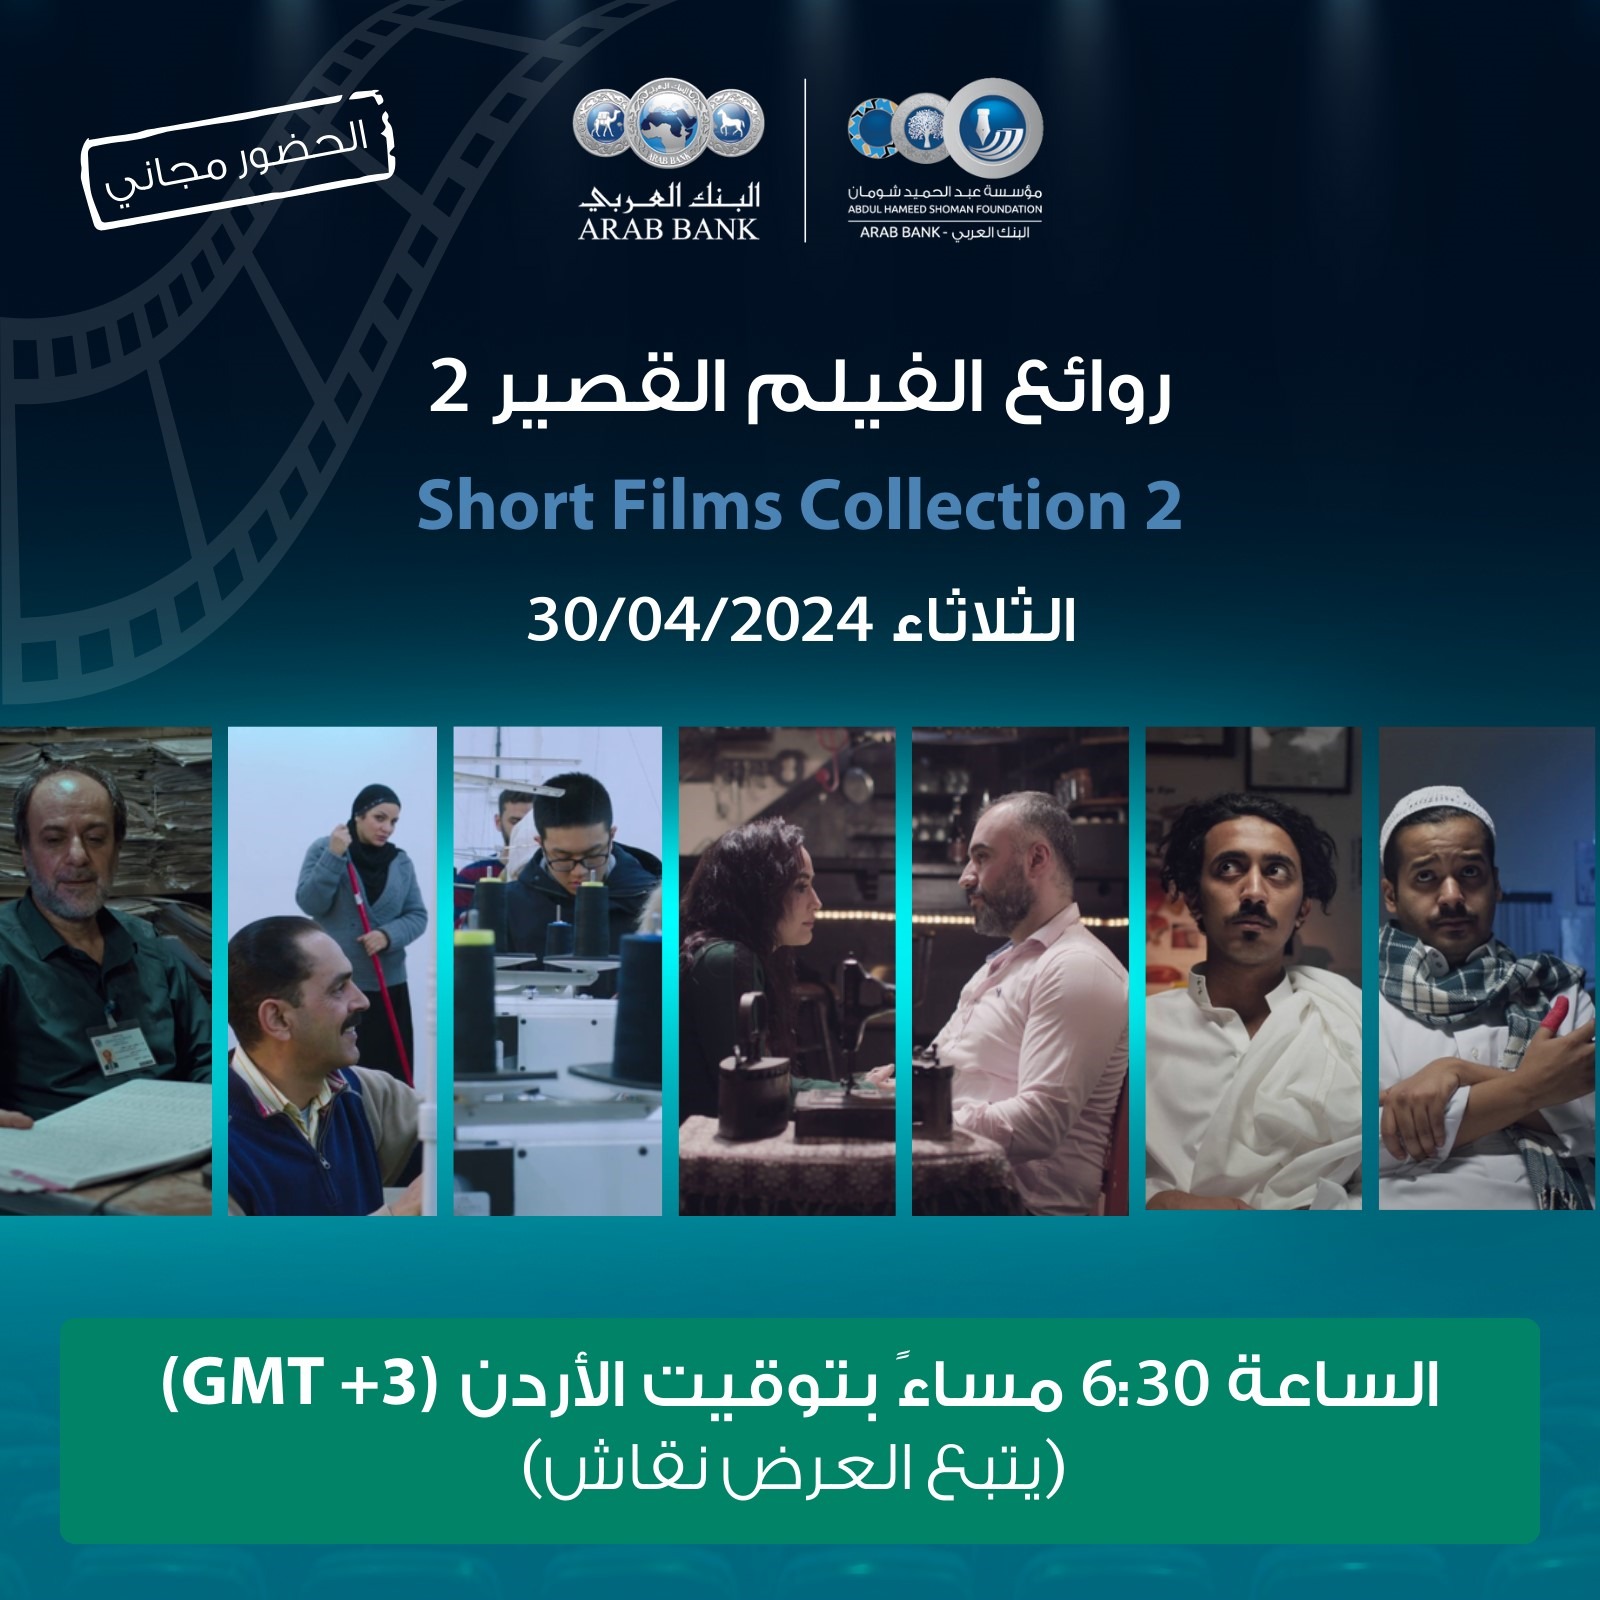 أربعة أفلام عربية قصيرة تعرض غدا في سينما شومان بجبل عمان